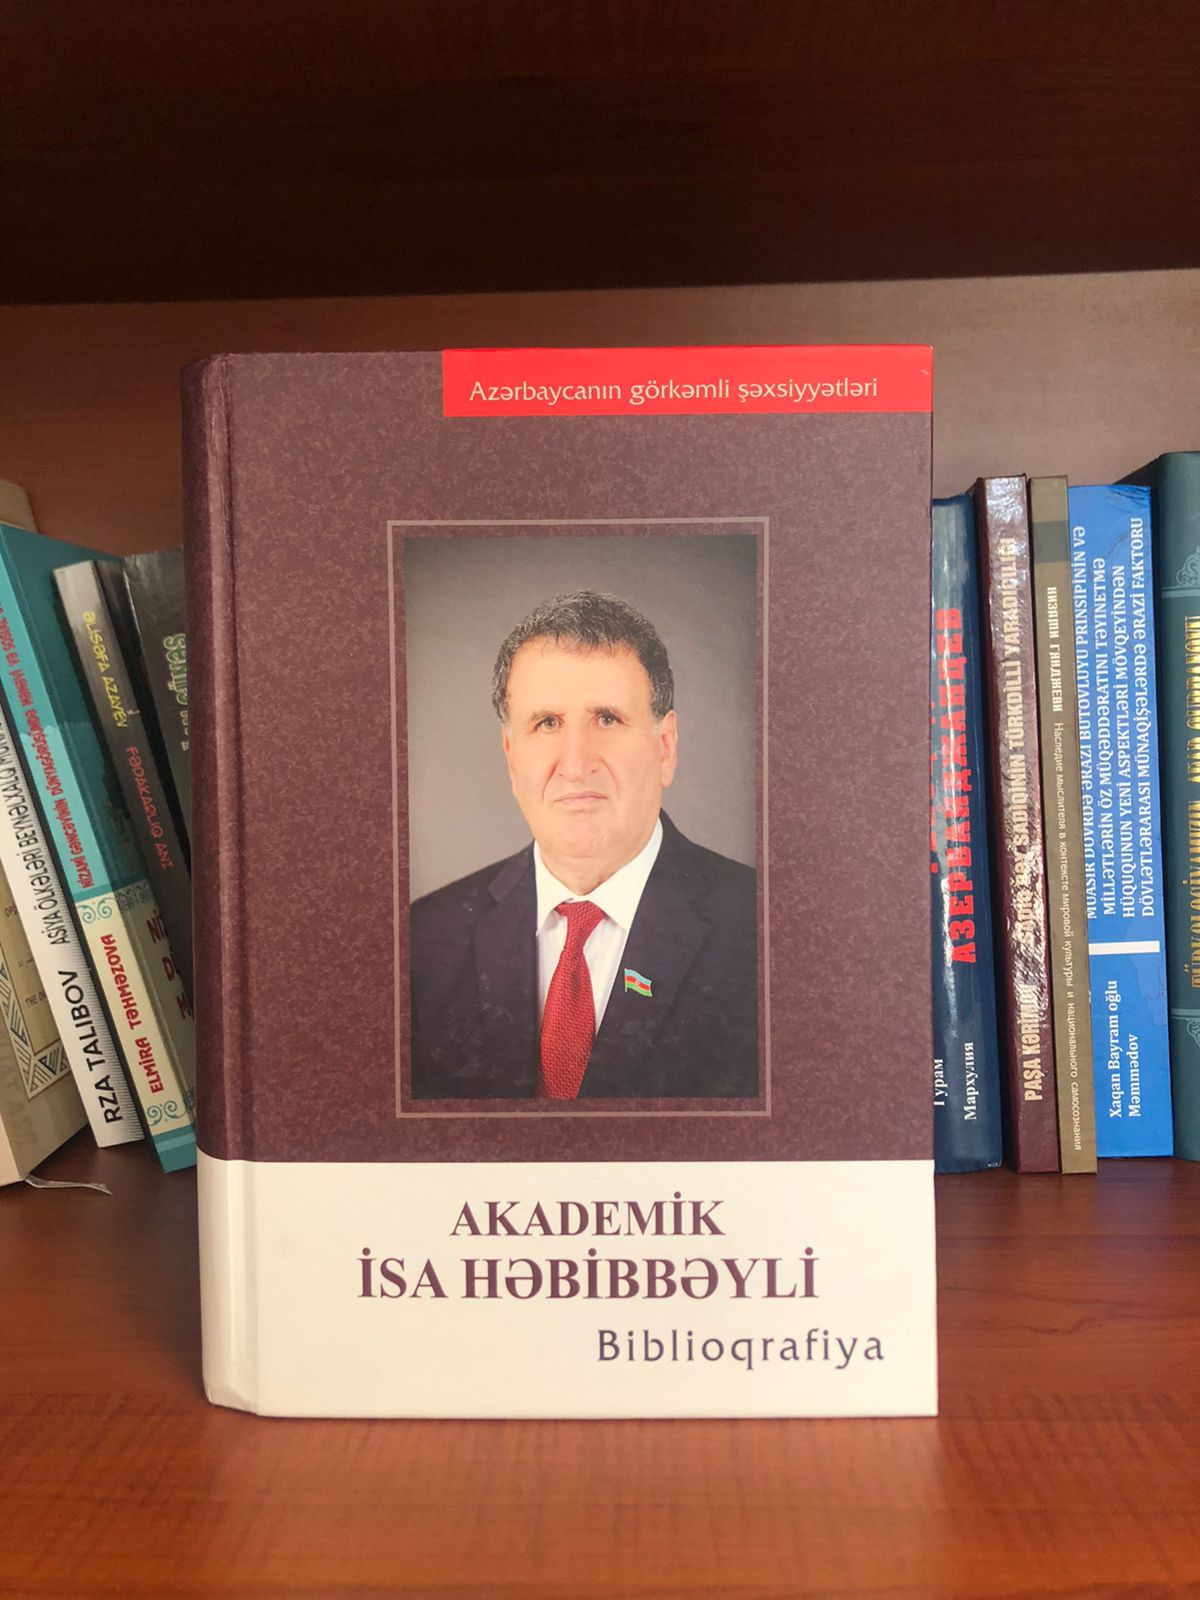 В ЦНБ создана личная книжная коллекция академика Исы Габиббейли